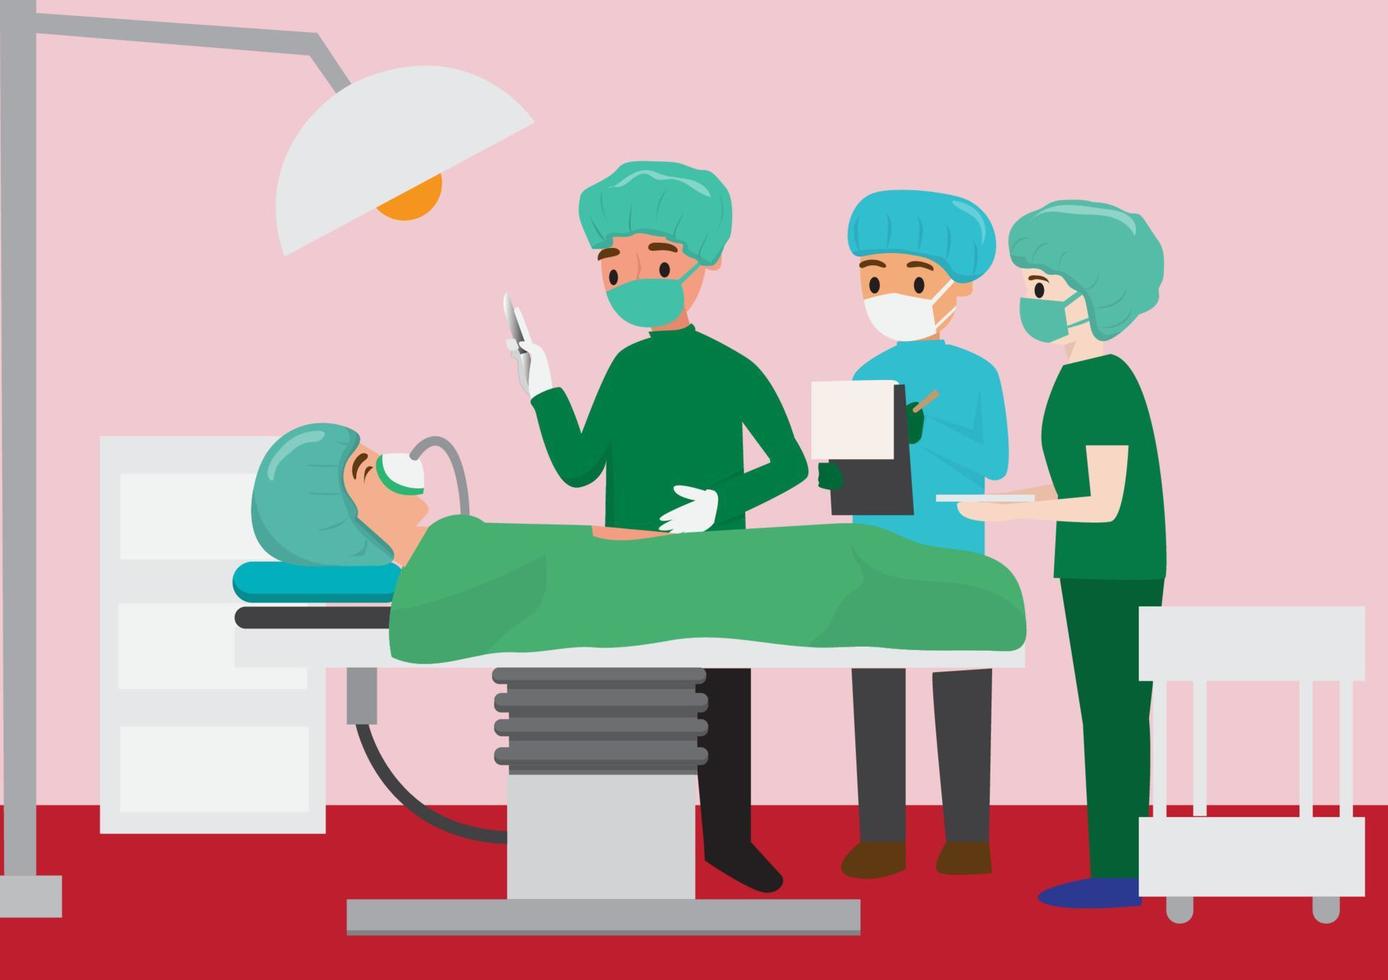 equipe de cirurgiões em torno do médico da mesa de operação do paciente prepara o conceito de tecnologia cirúrgica. curar doenças graves. ilustração em vetor estilo simples dos desenhos animados.